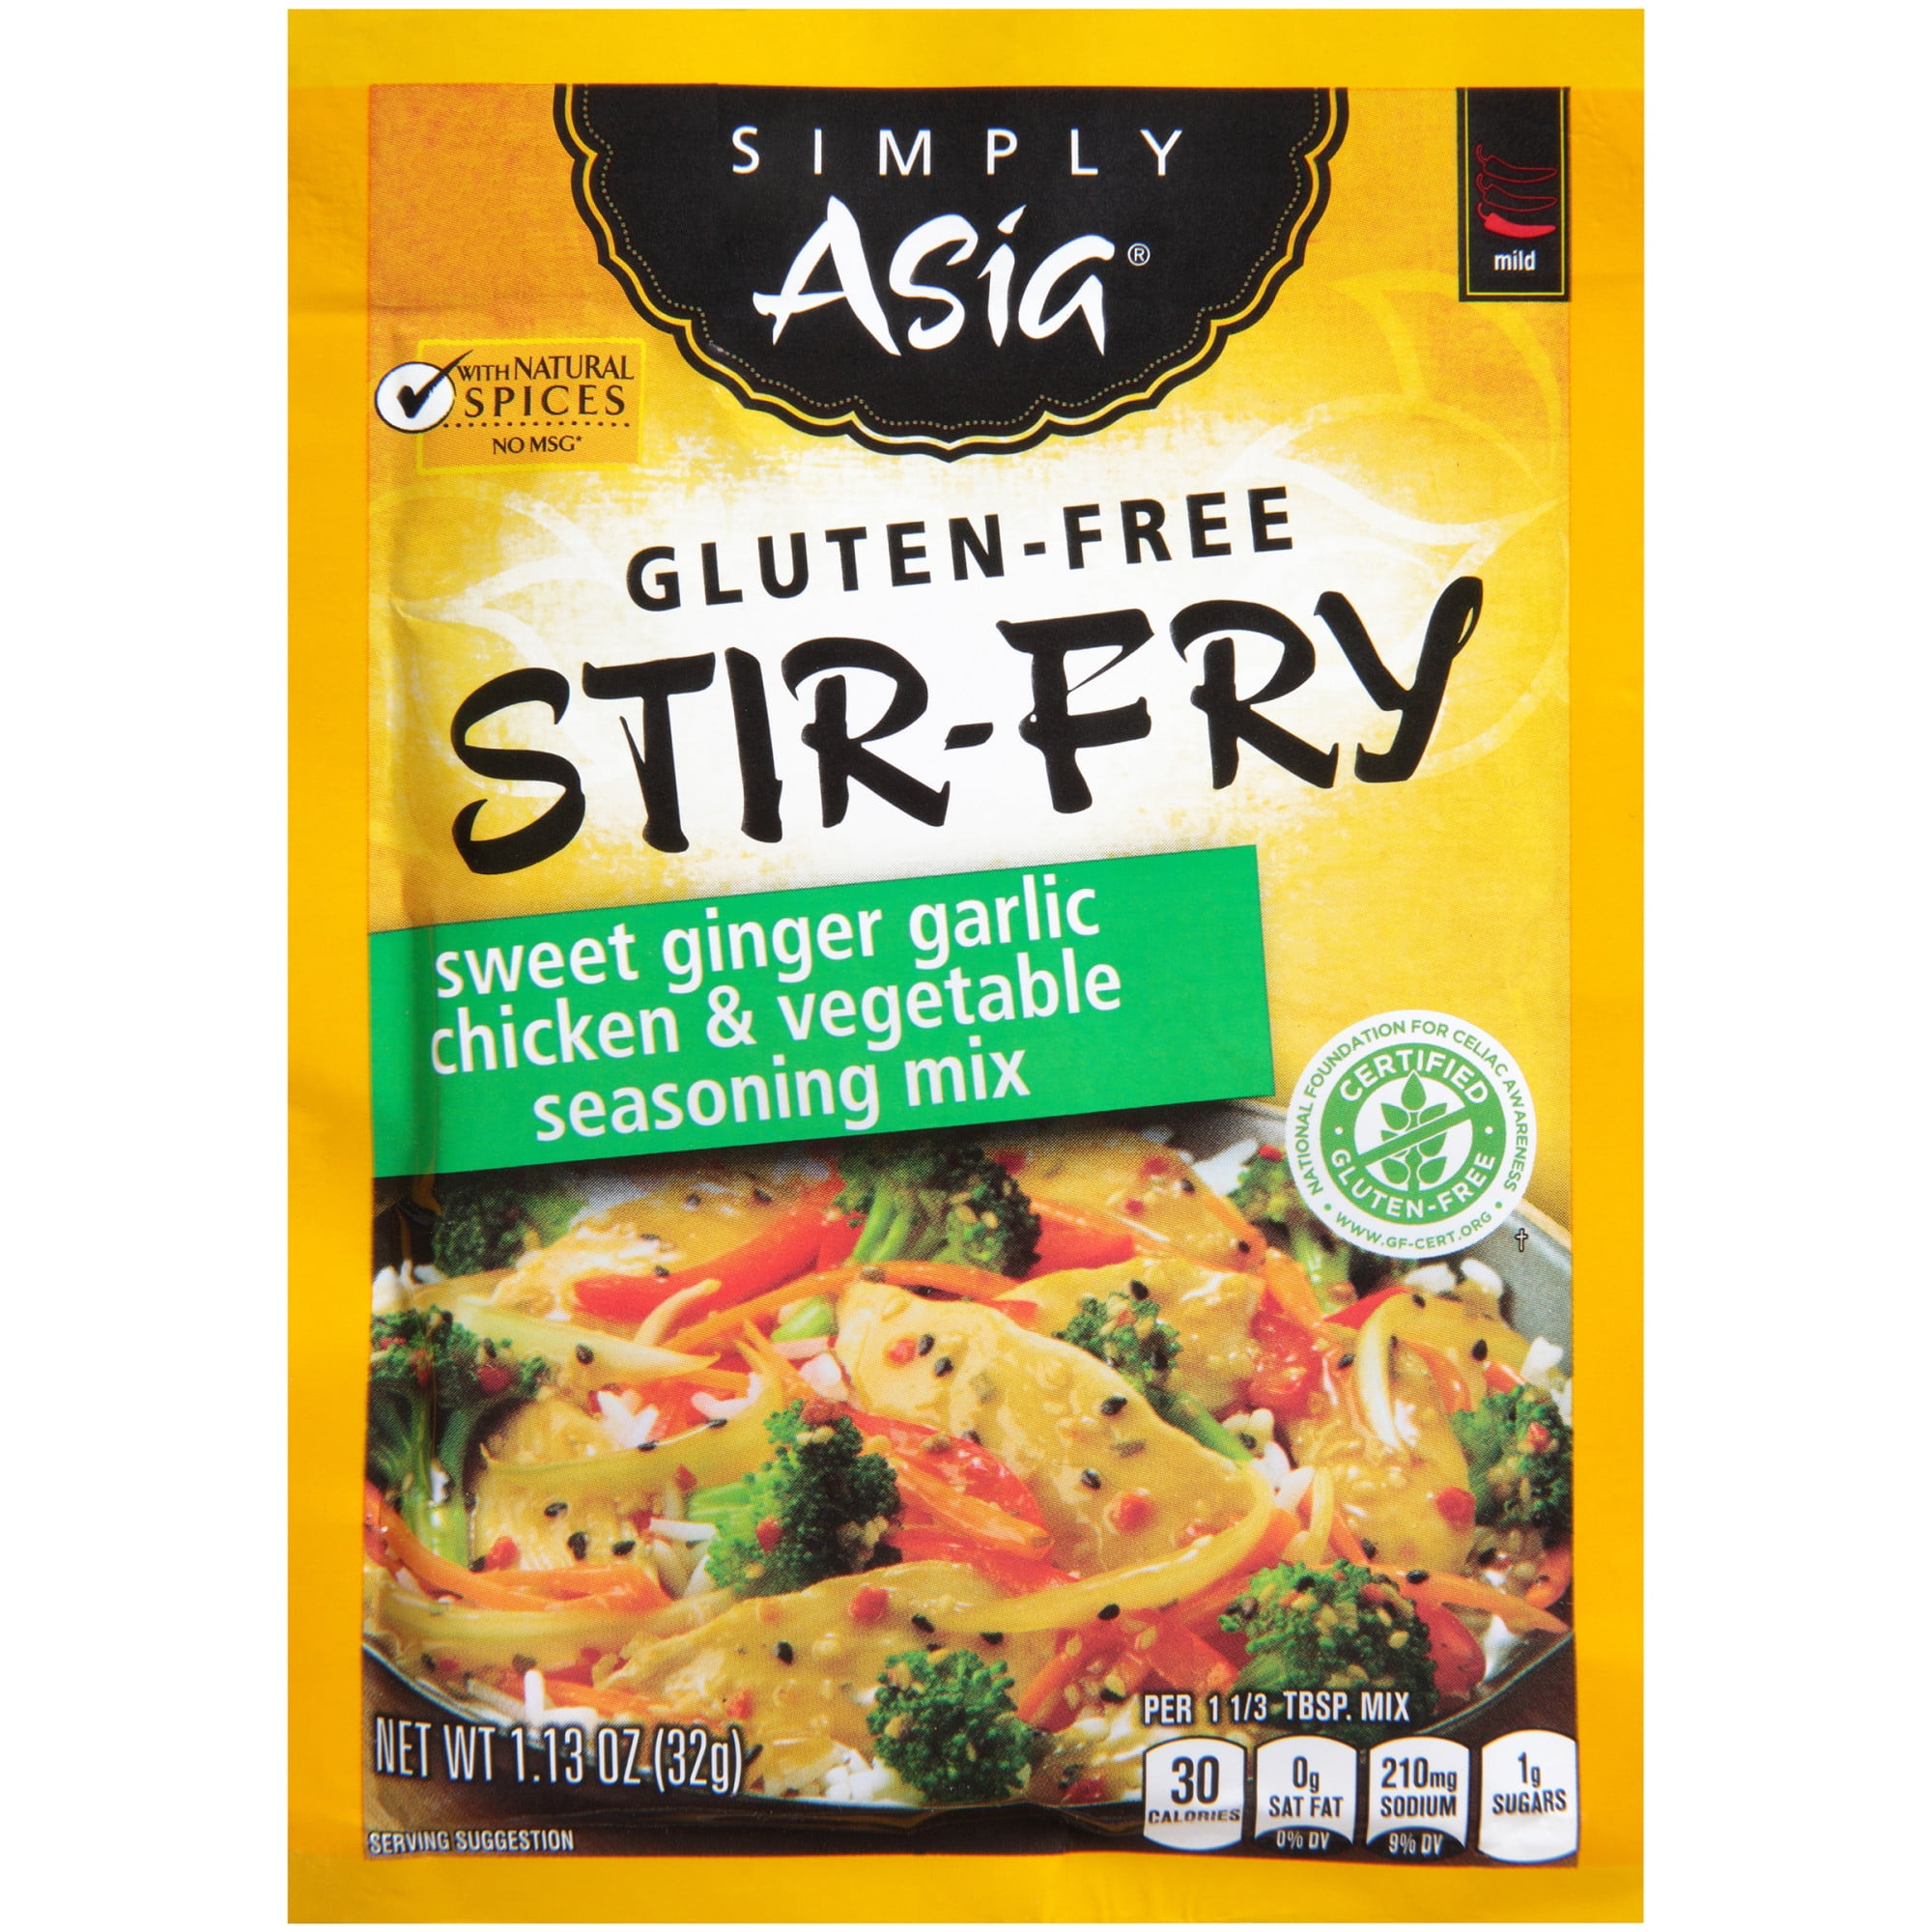 Simply Asia Gluten-Free Stir-Fry Sweet Ginger Garlic Chicken & Vegetable  Seasoning Mix